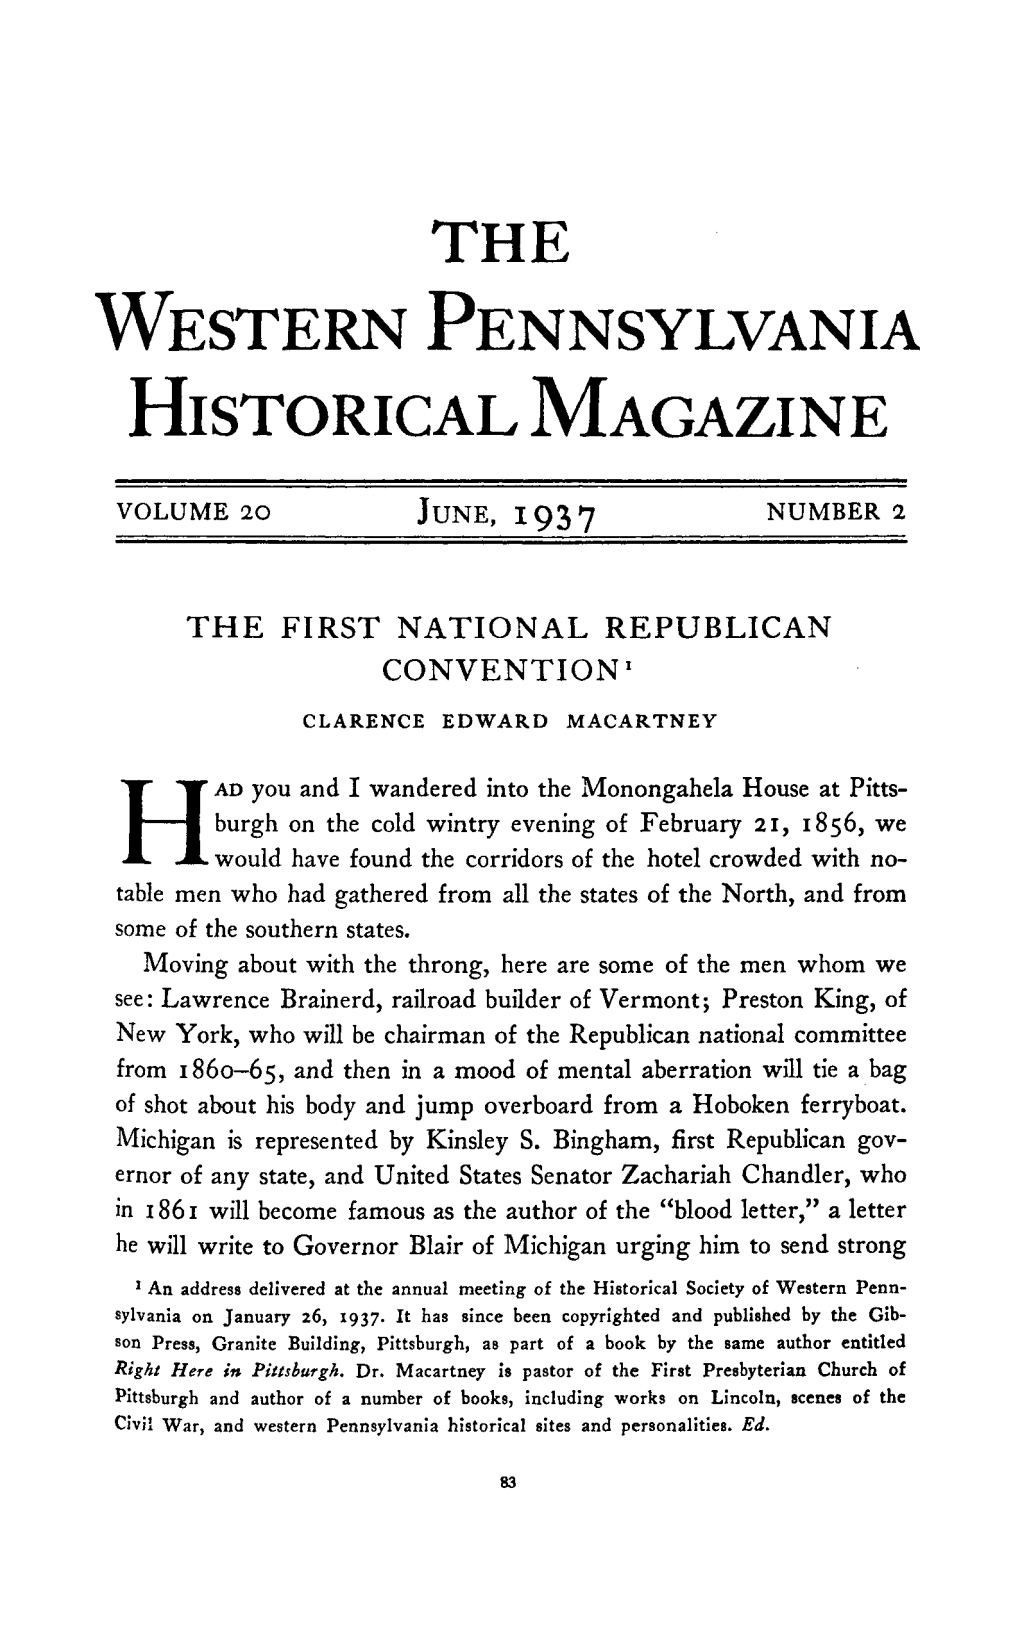 Historical Magazine